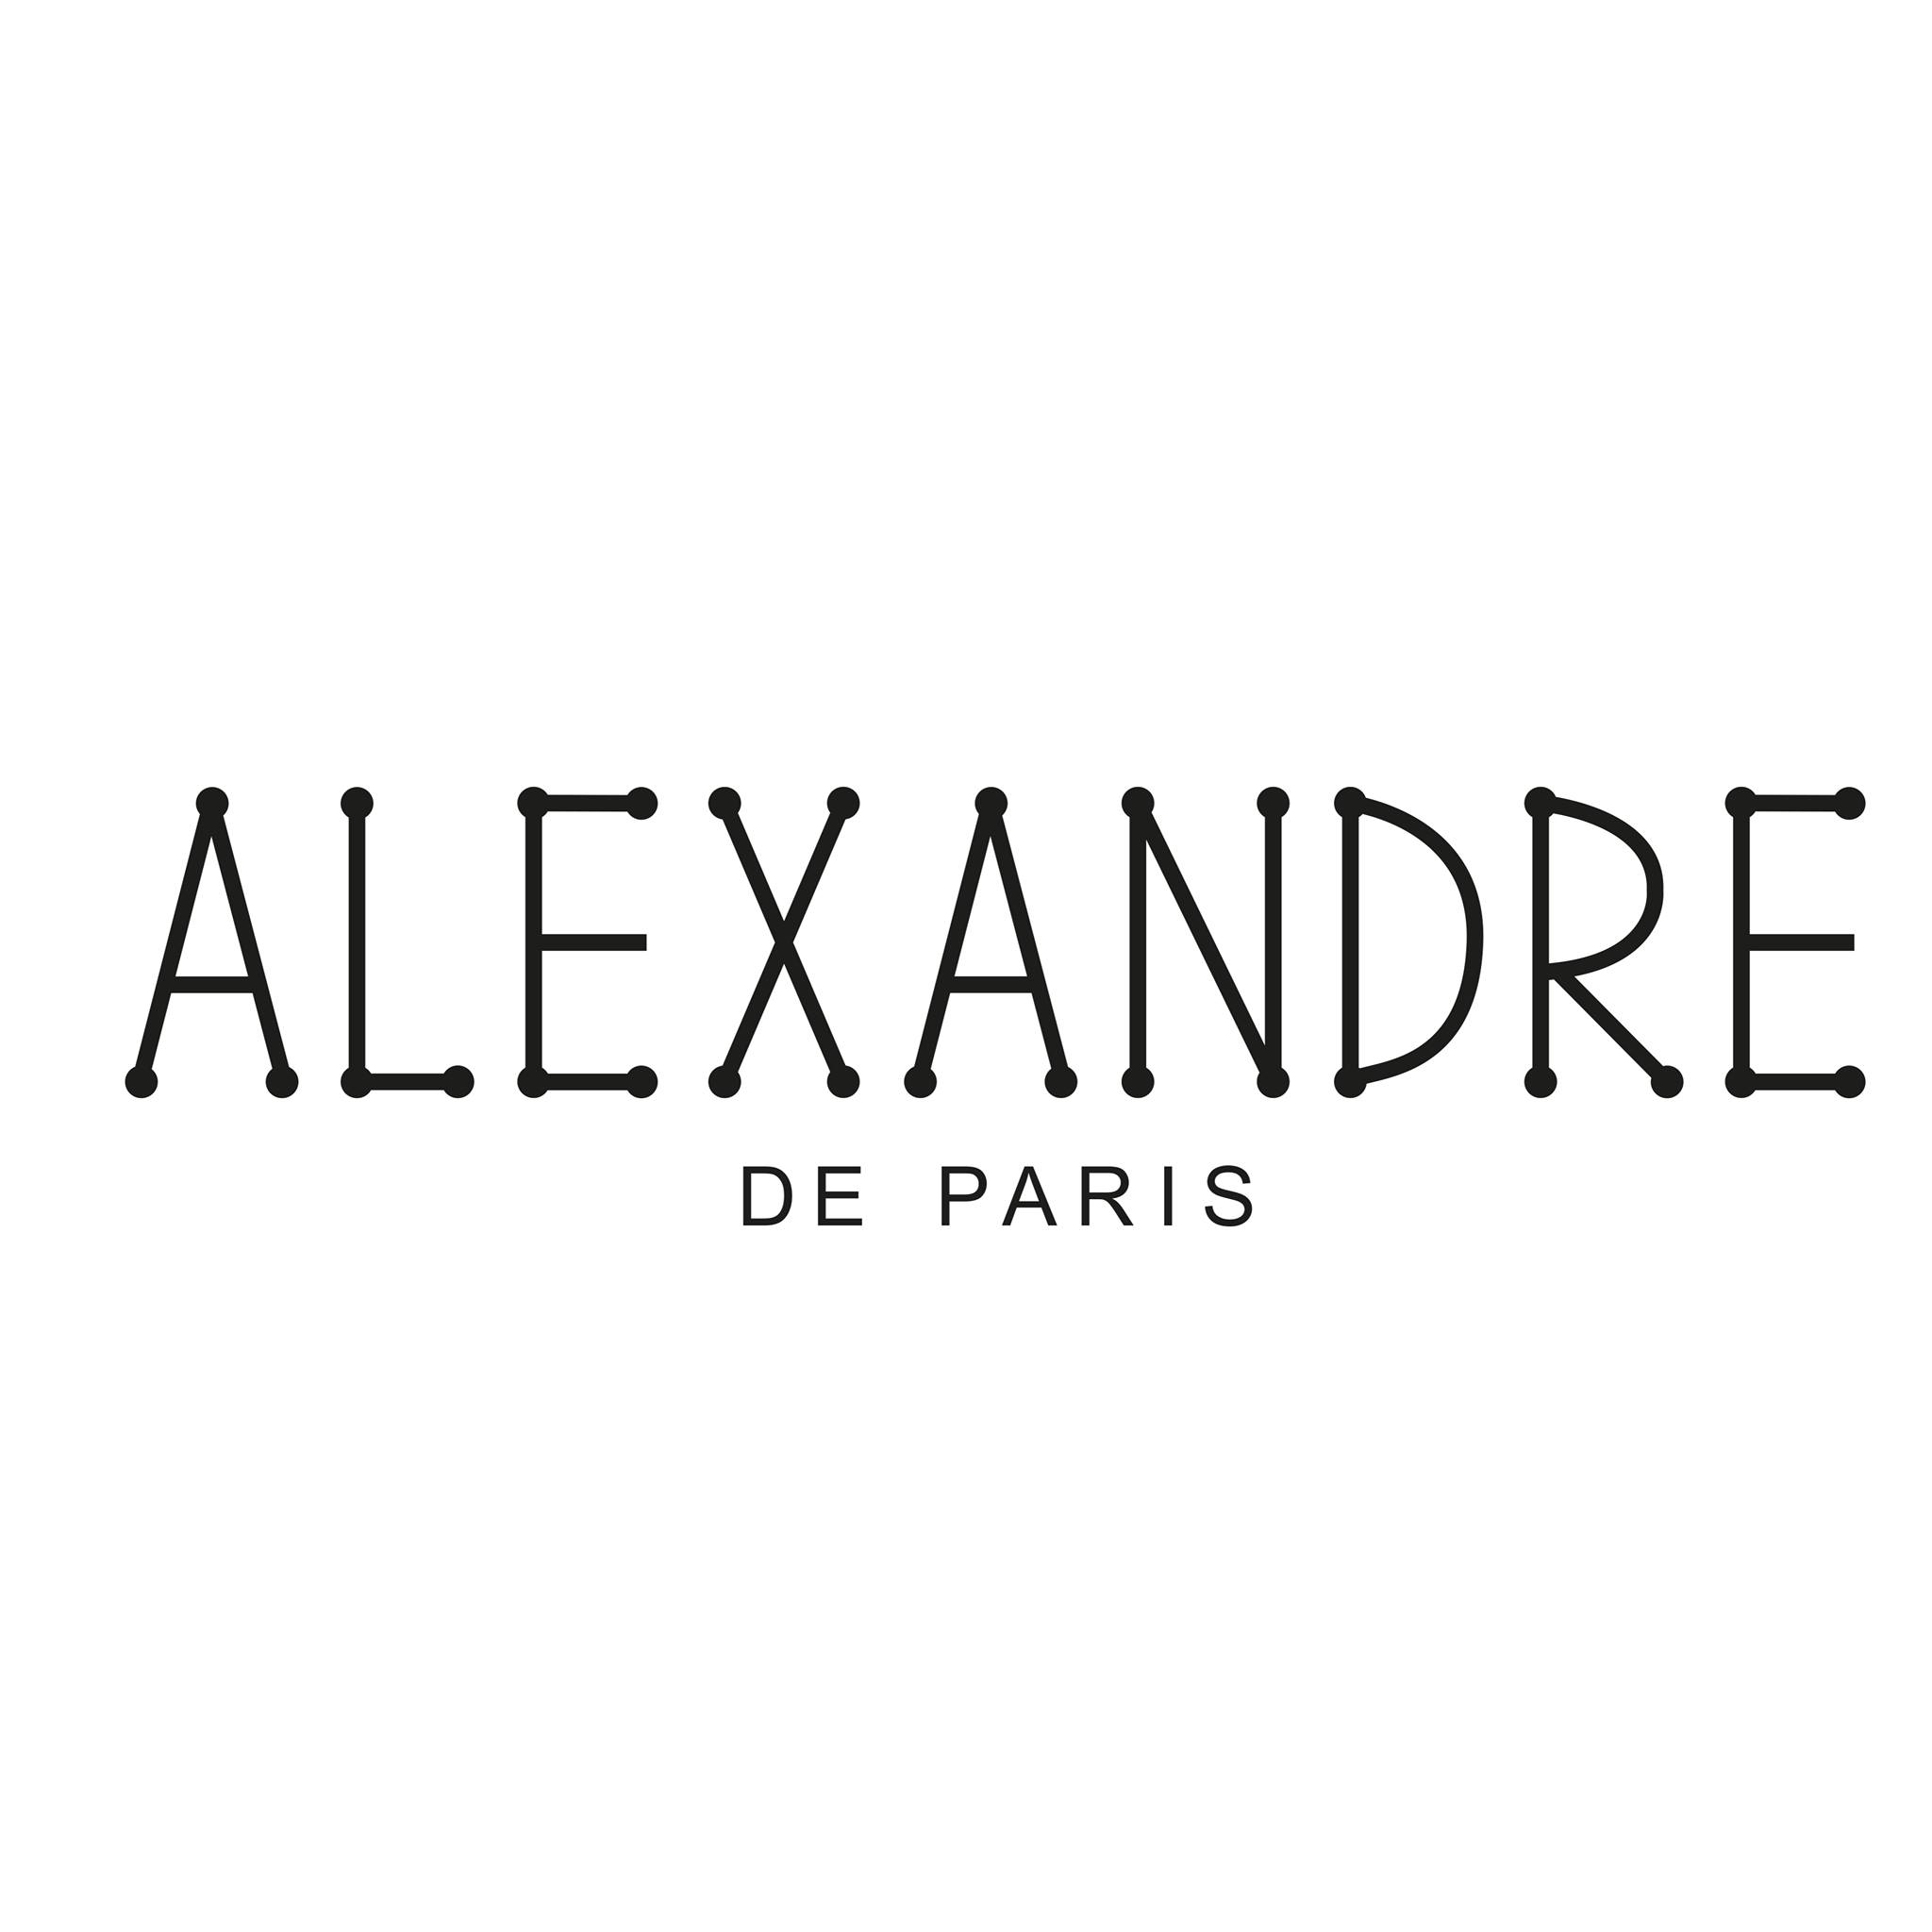 ALEXANDRE DE PARIS Coupons